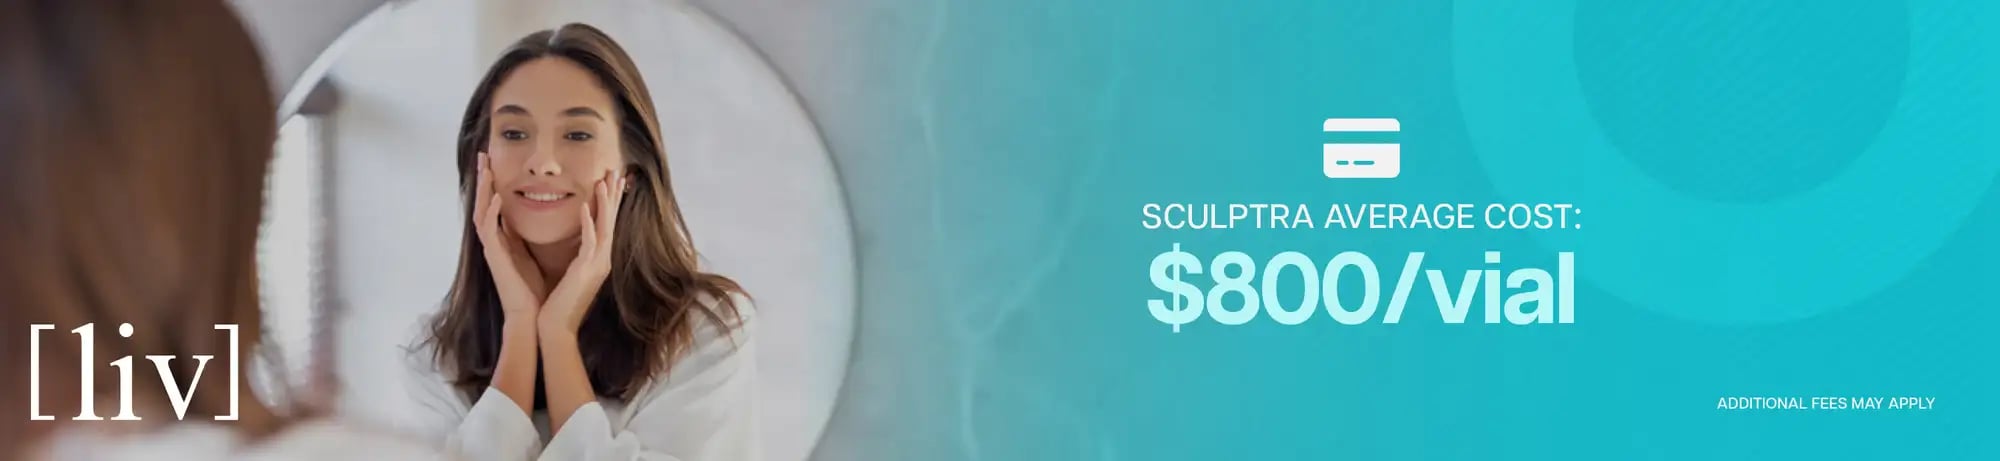 Sculptra average cost $800/ vial in Boca Raton, FL 